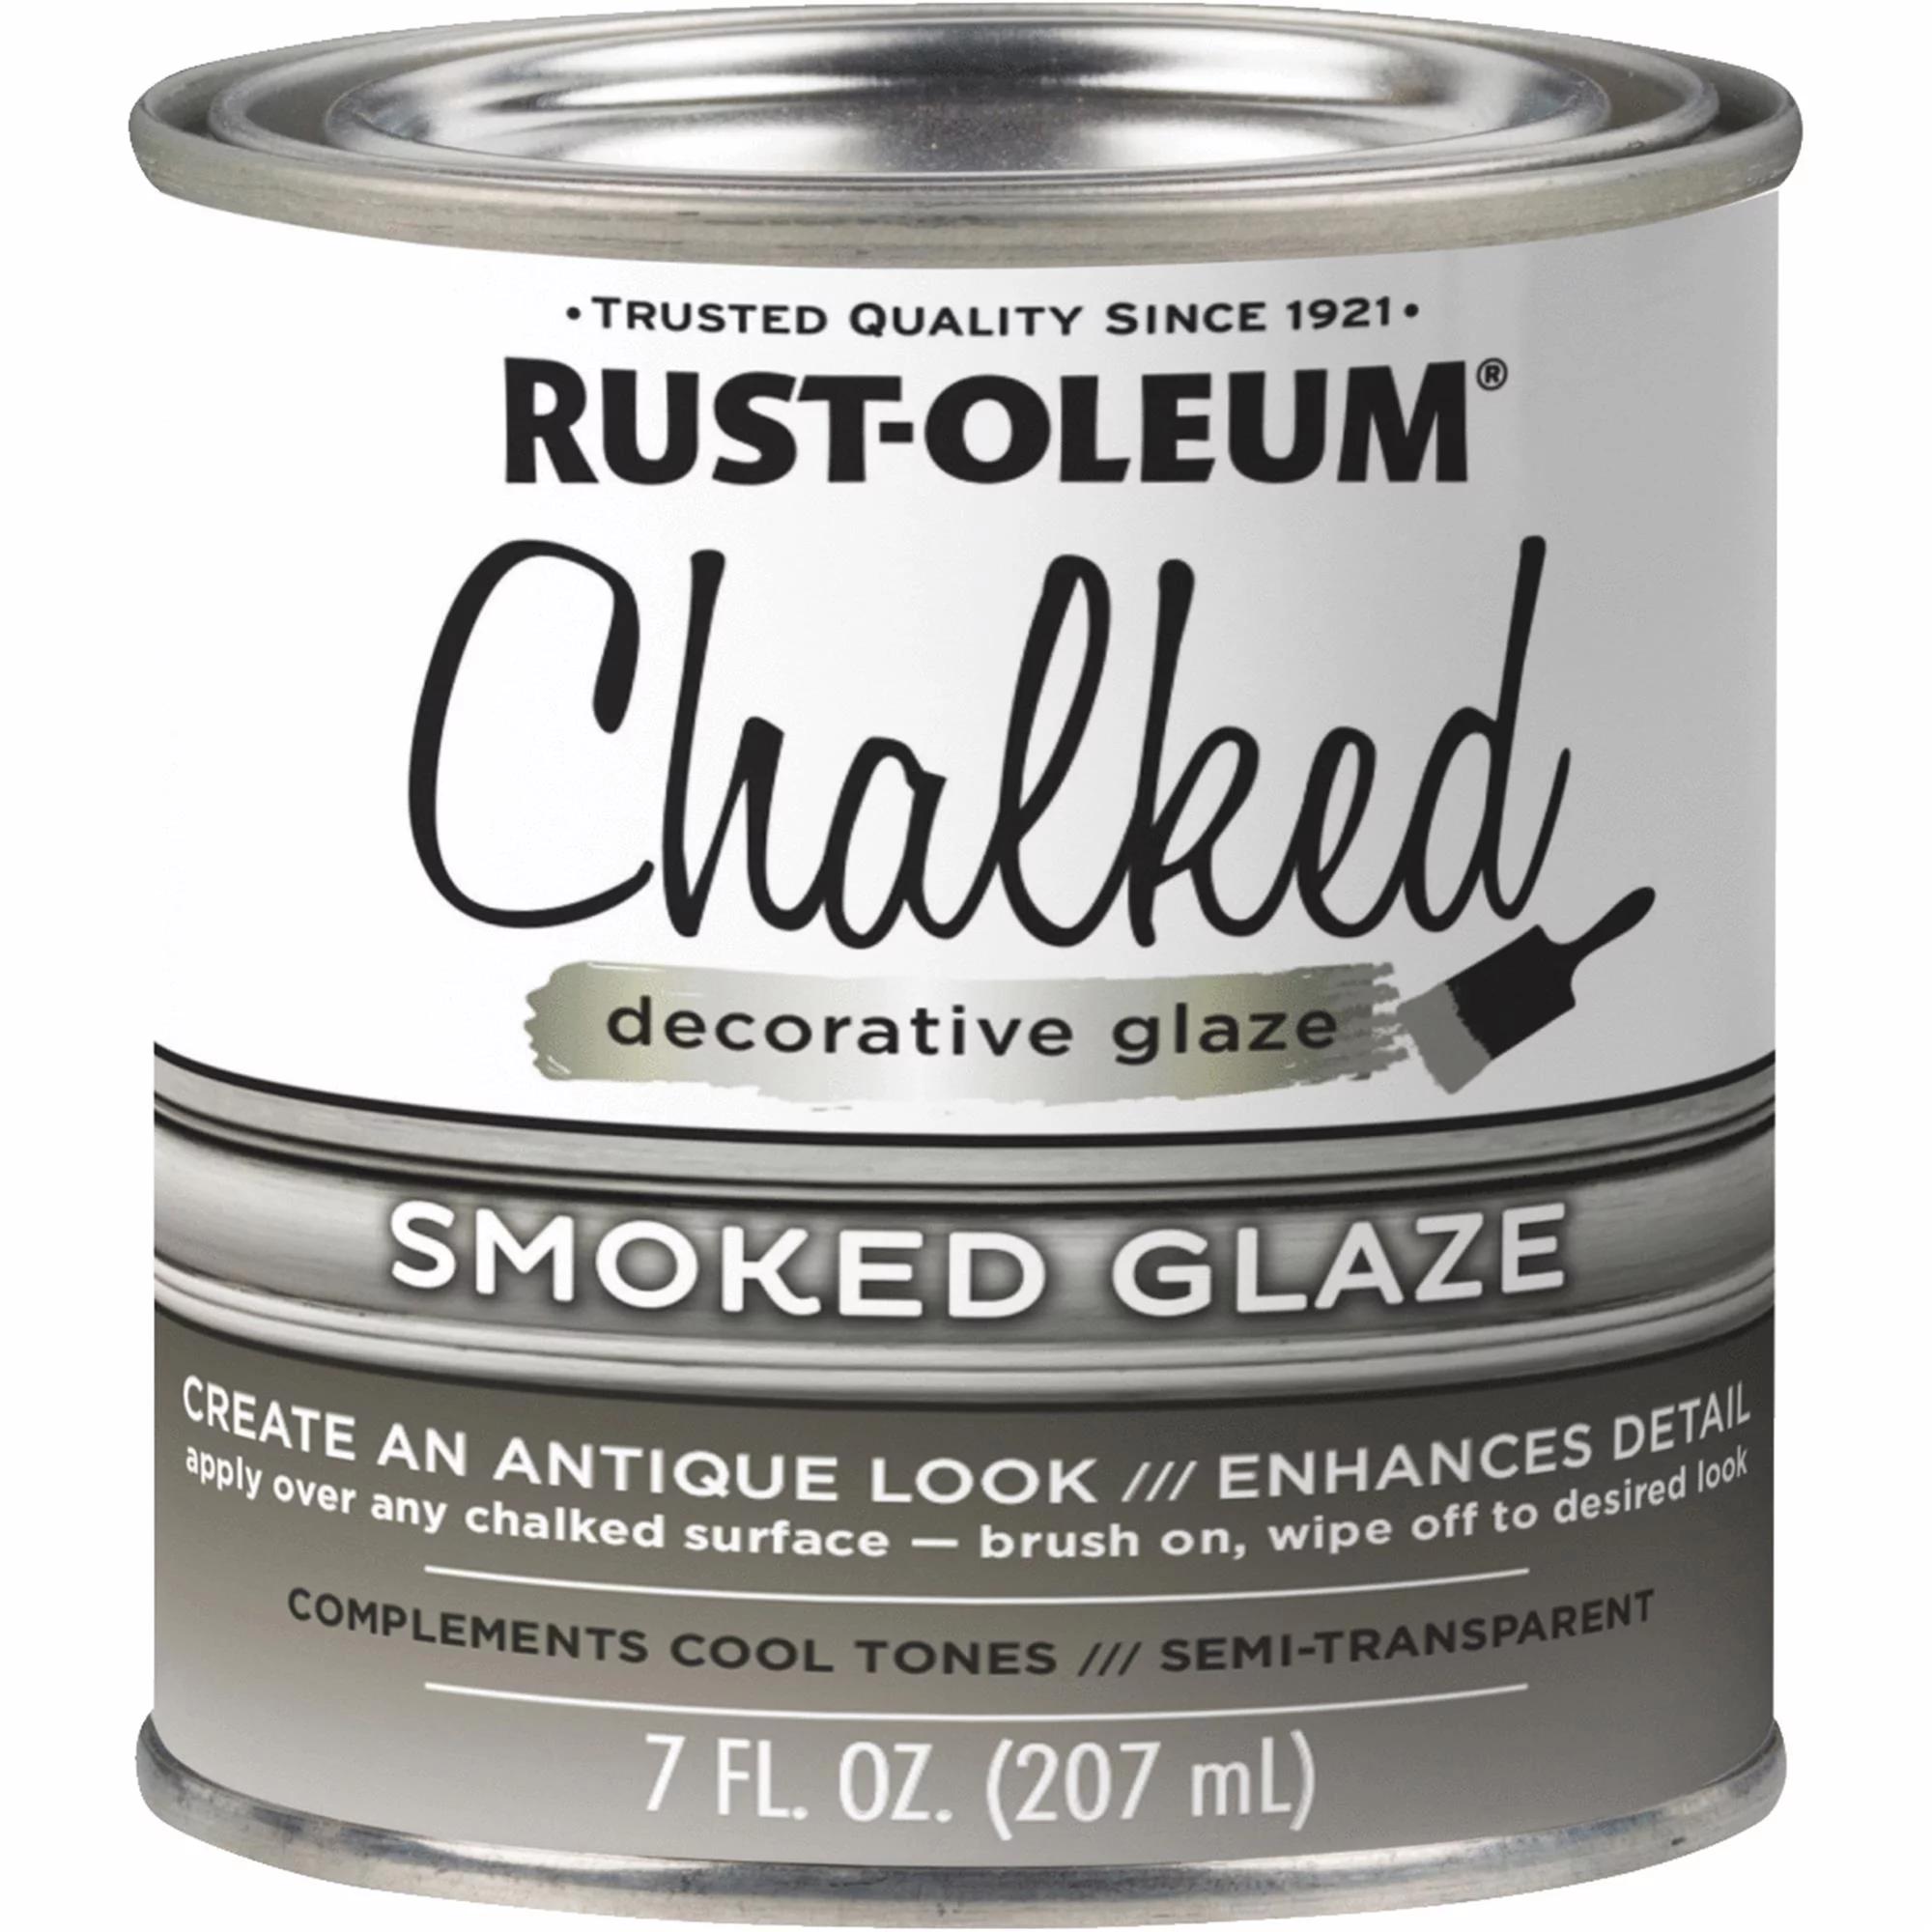 smoked glaze - What does Rustoleum smoked glaze do